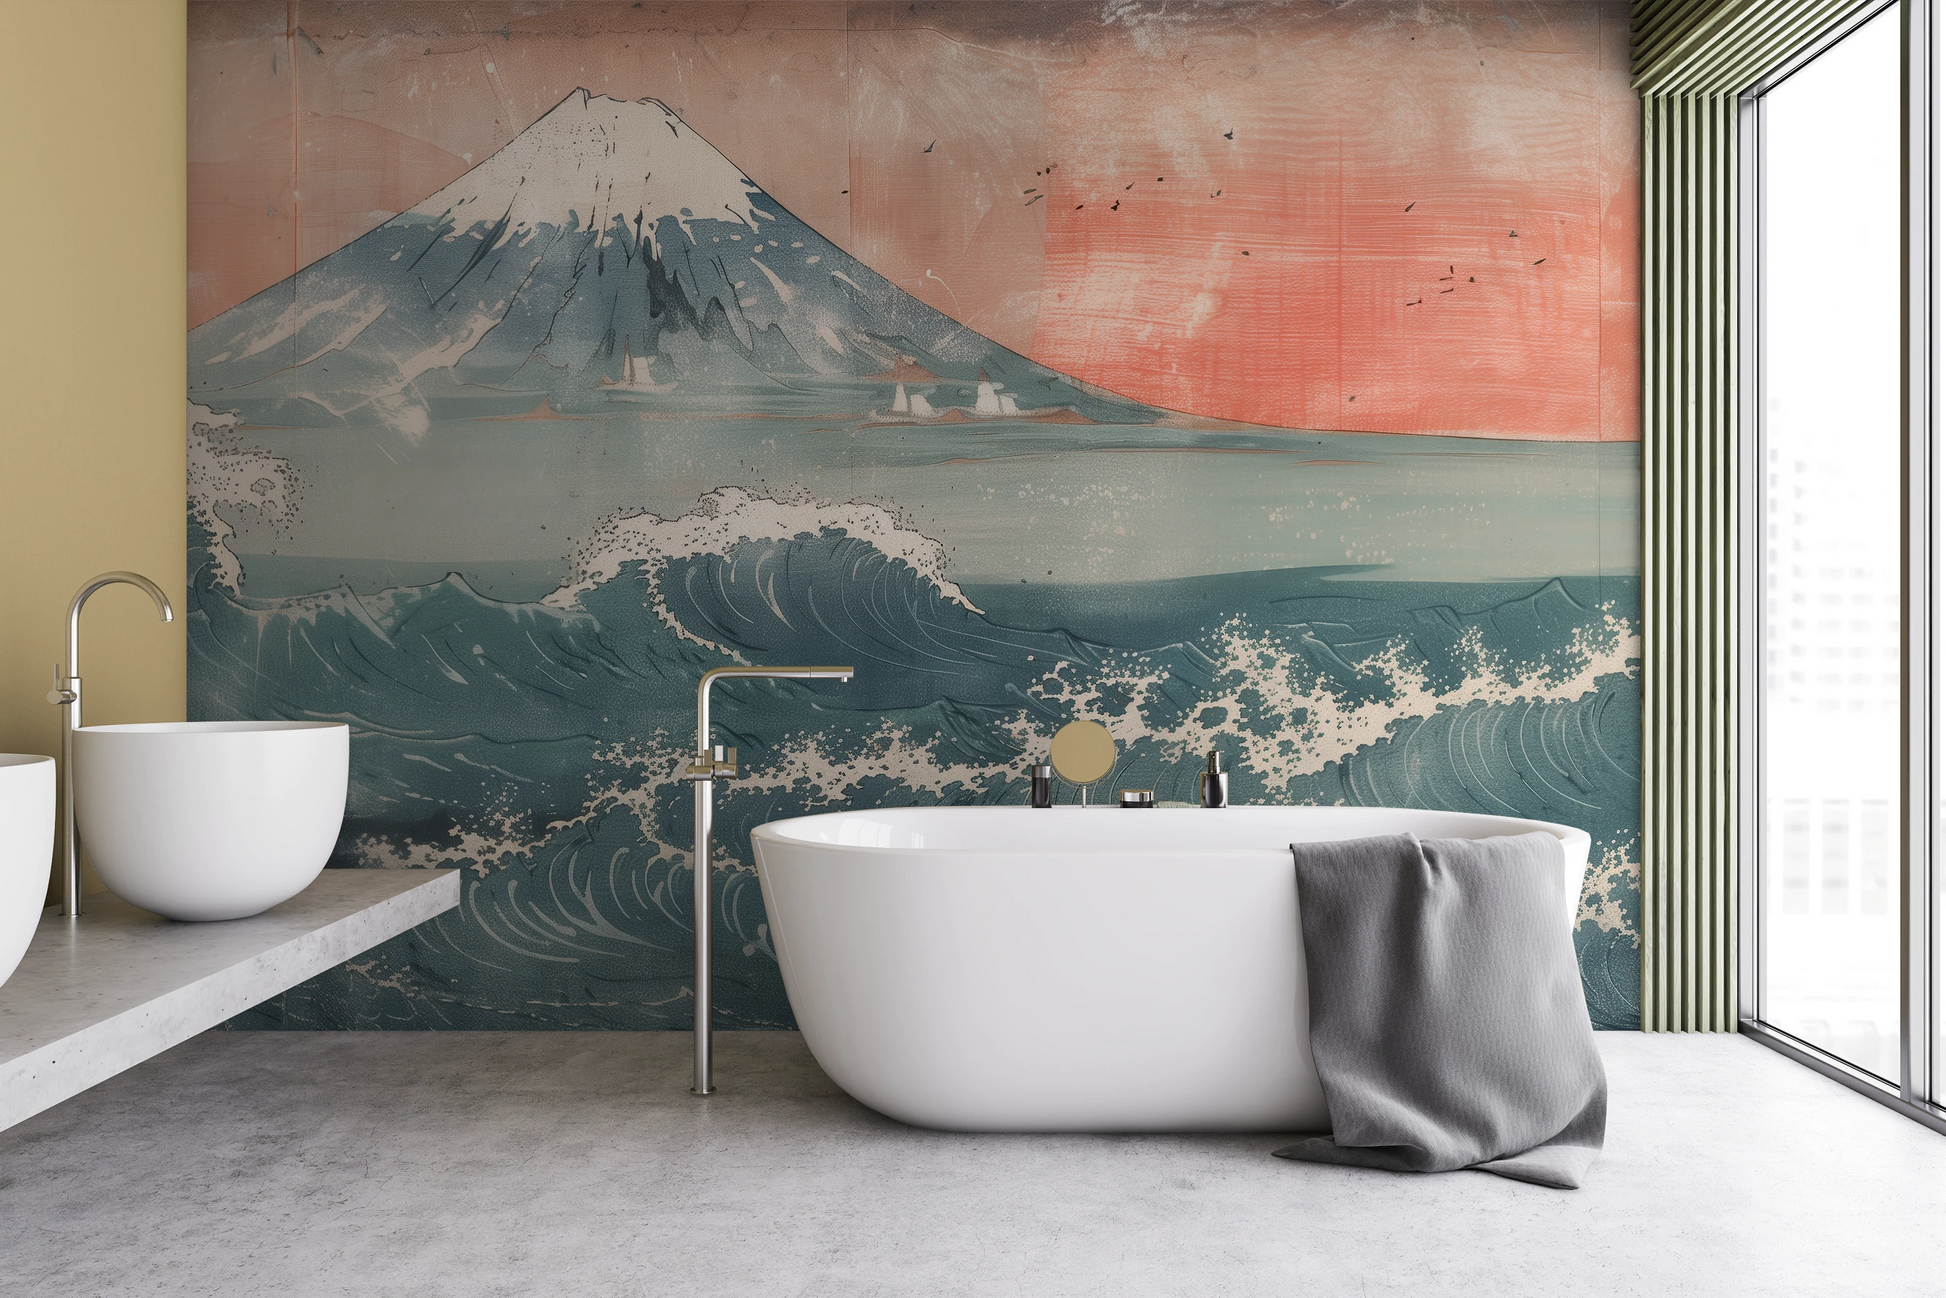 Wzór fototapety artystycznej o nazwie Fuji's Serenity pokazanej w aranżacji wnętrza.